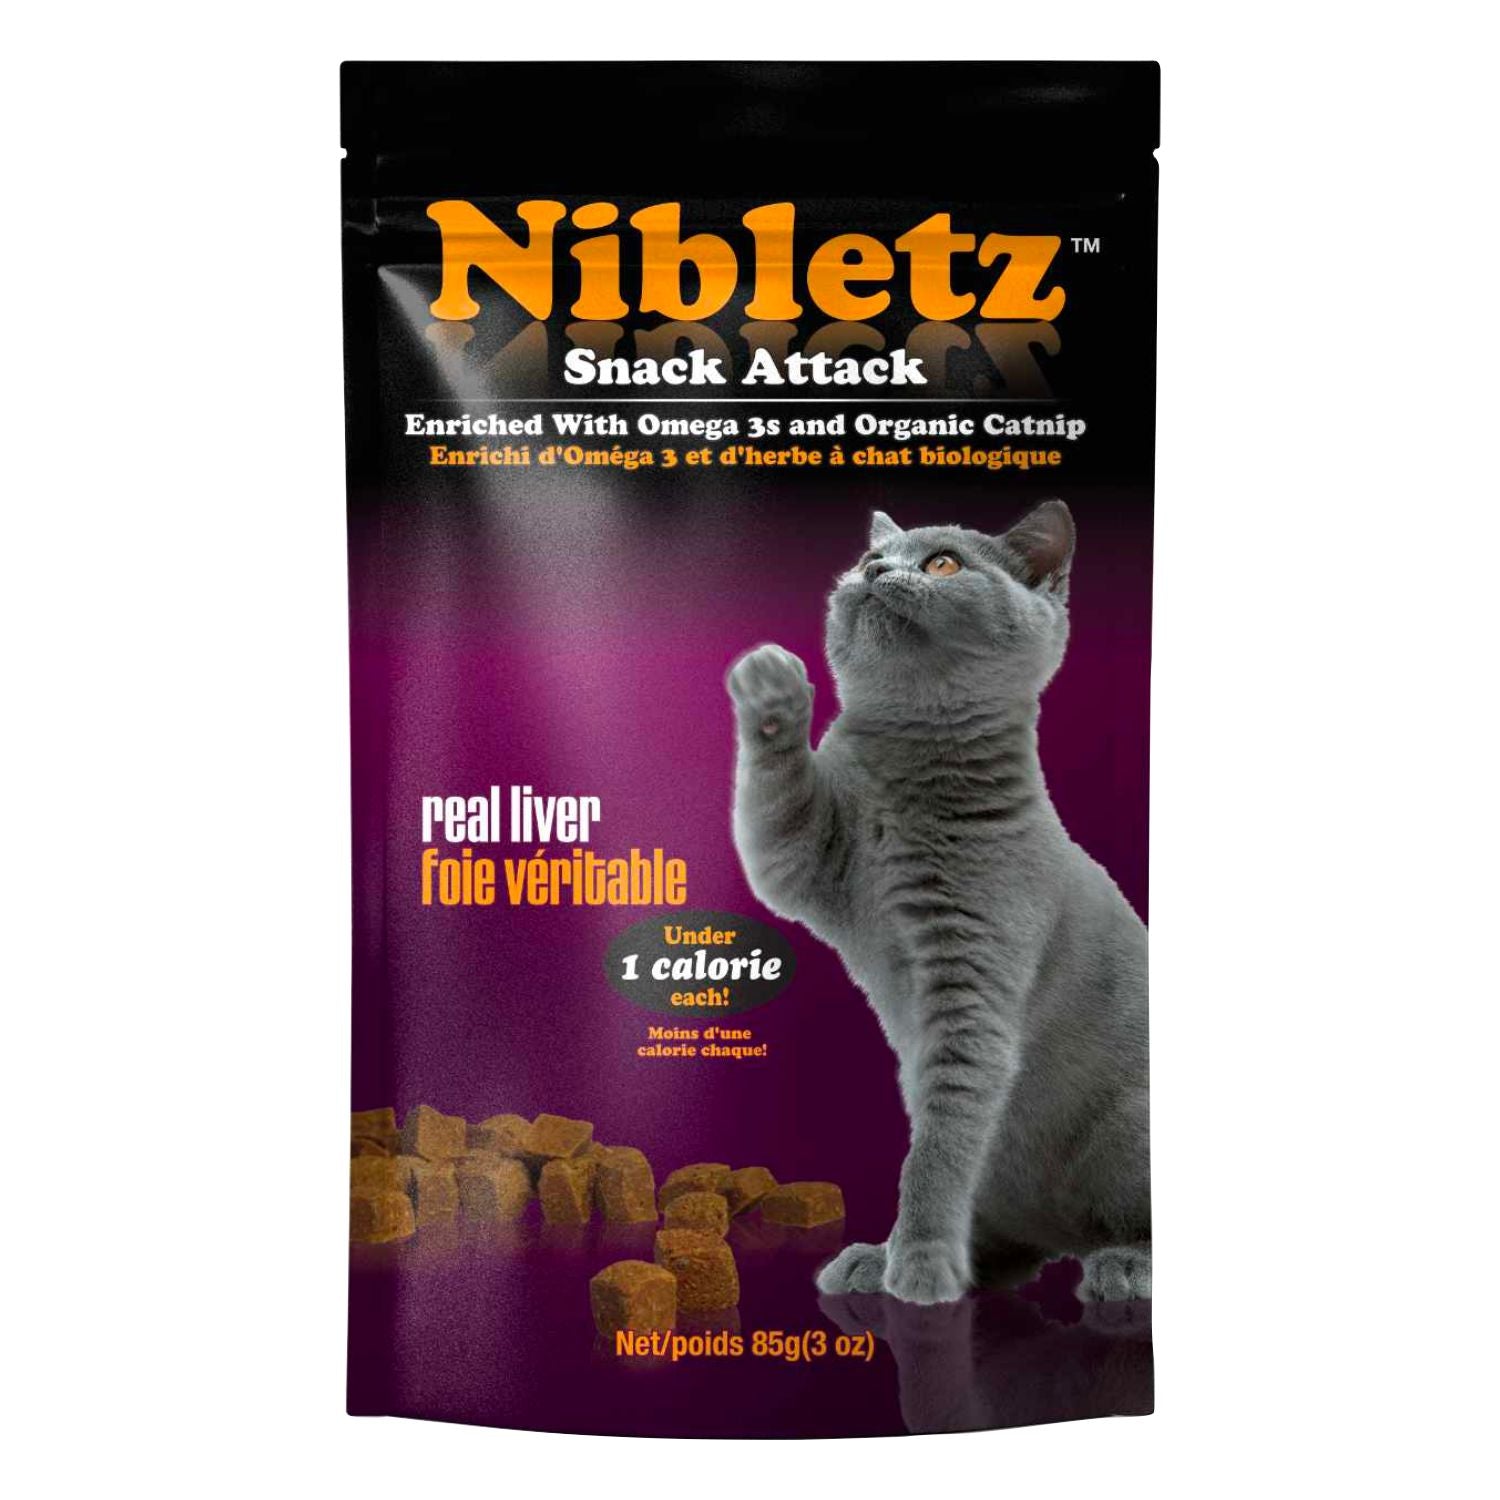 NIBLETZ Snack Attack, Real Liver Cat Treats, 3 oz (85 g)